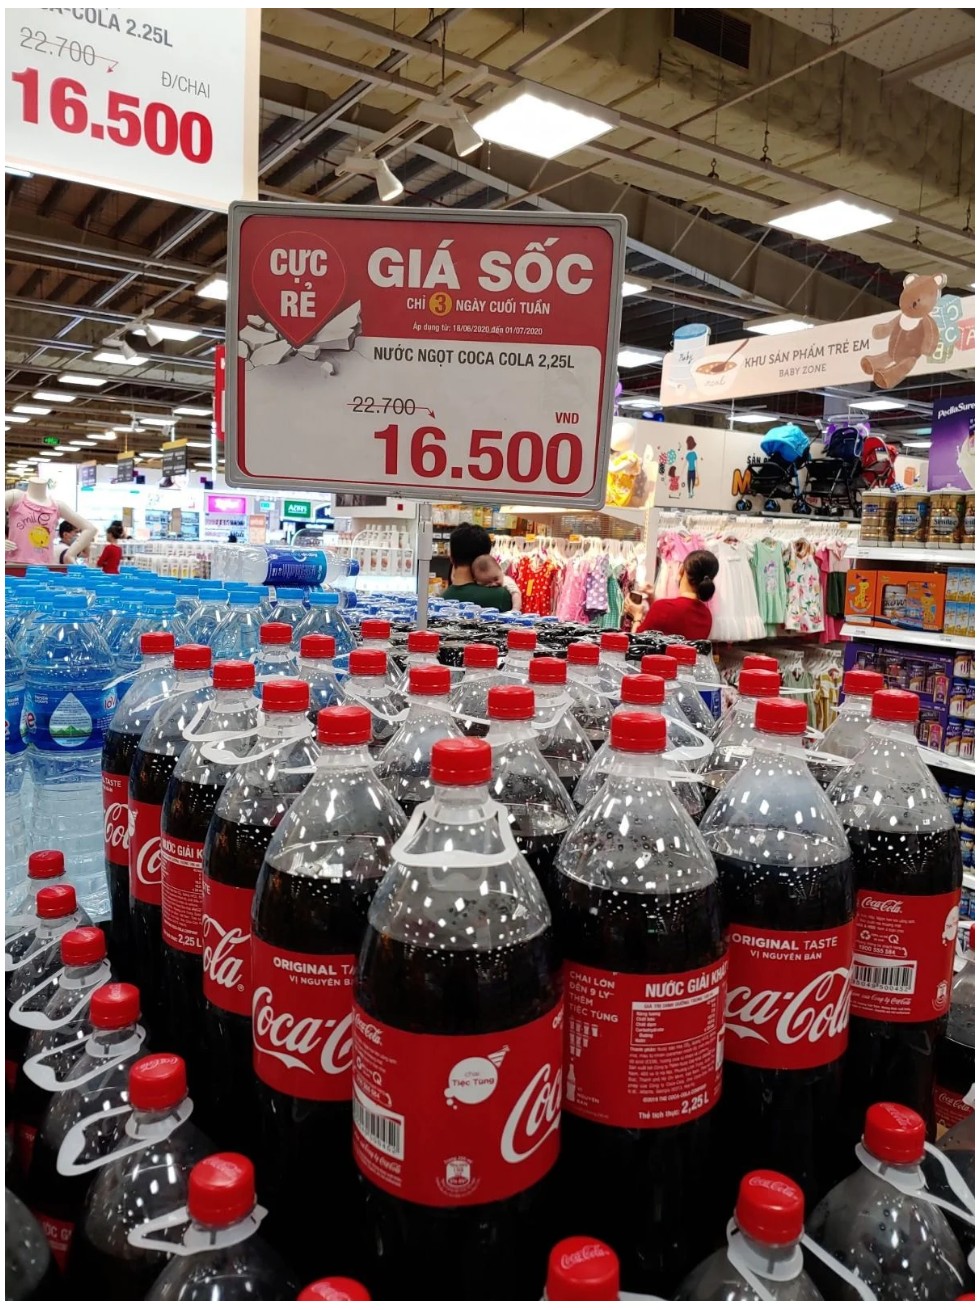  베트남 코카콜라 가격근황